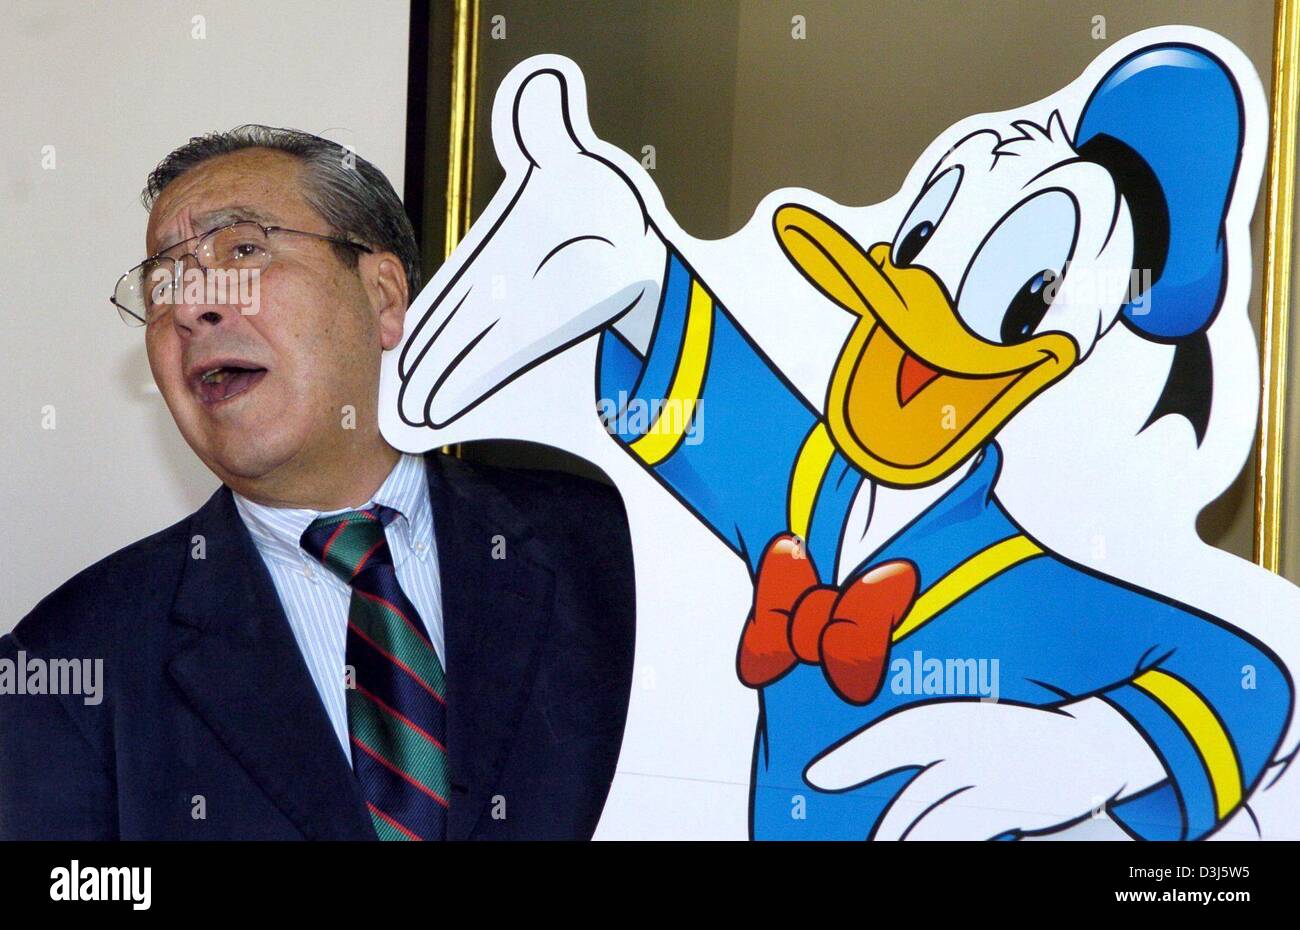 Afp) - Victor Arriagada Rios aka Vicaire reçoit une fausse gifle au visage  par Donald Duck à Berlin, Allemagne, le 3 juin 2004. L'artiste, né en 1934  au Chili, a été responsable